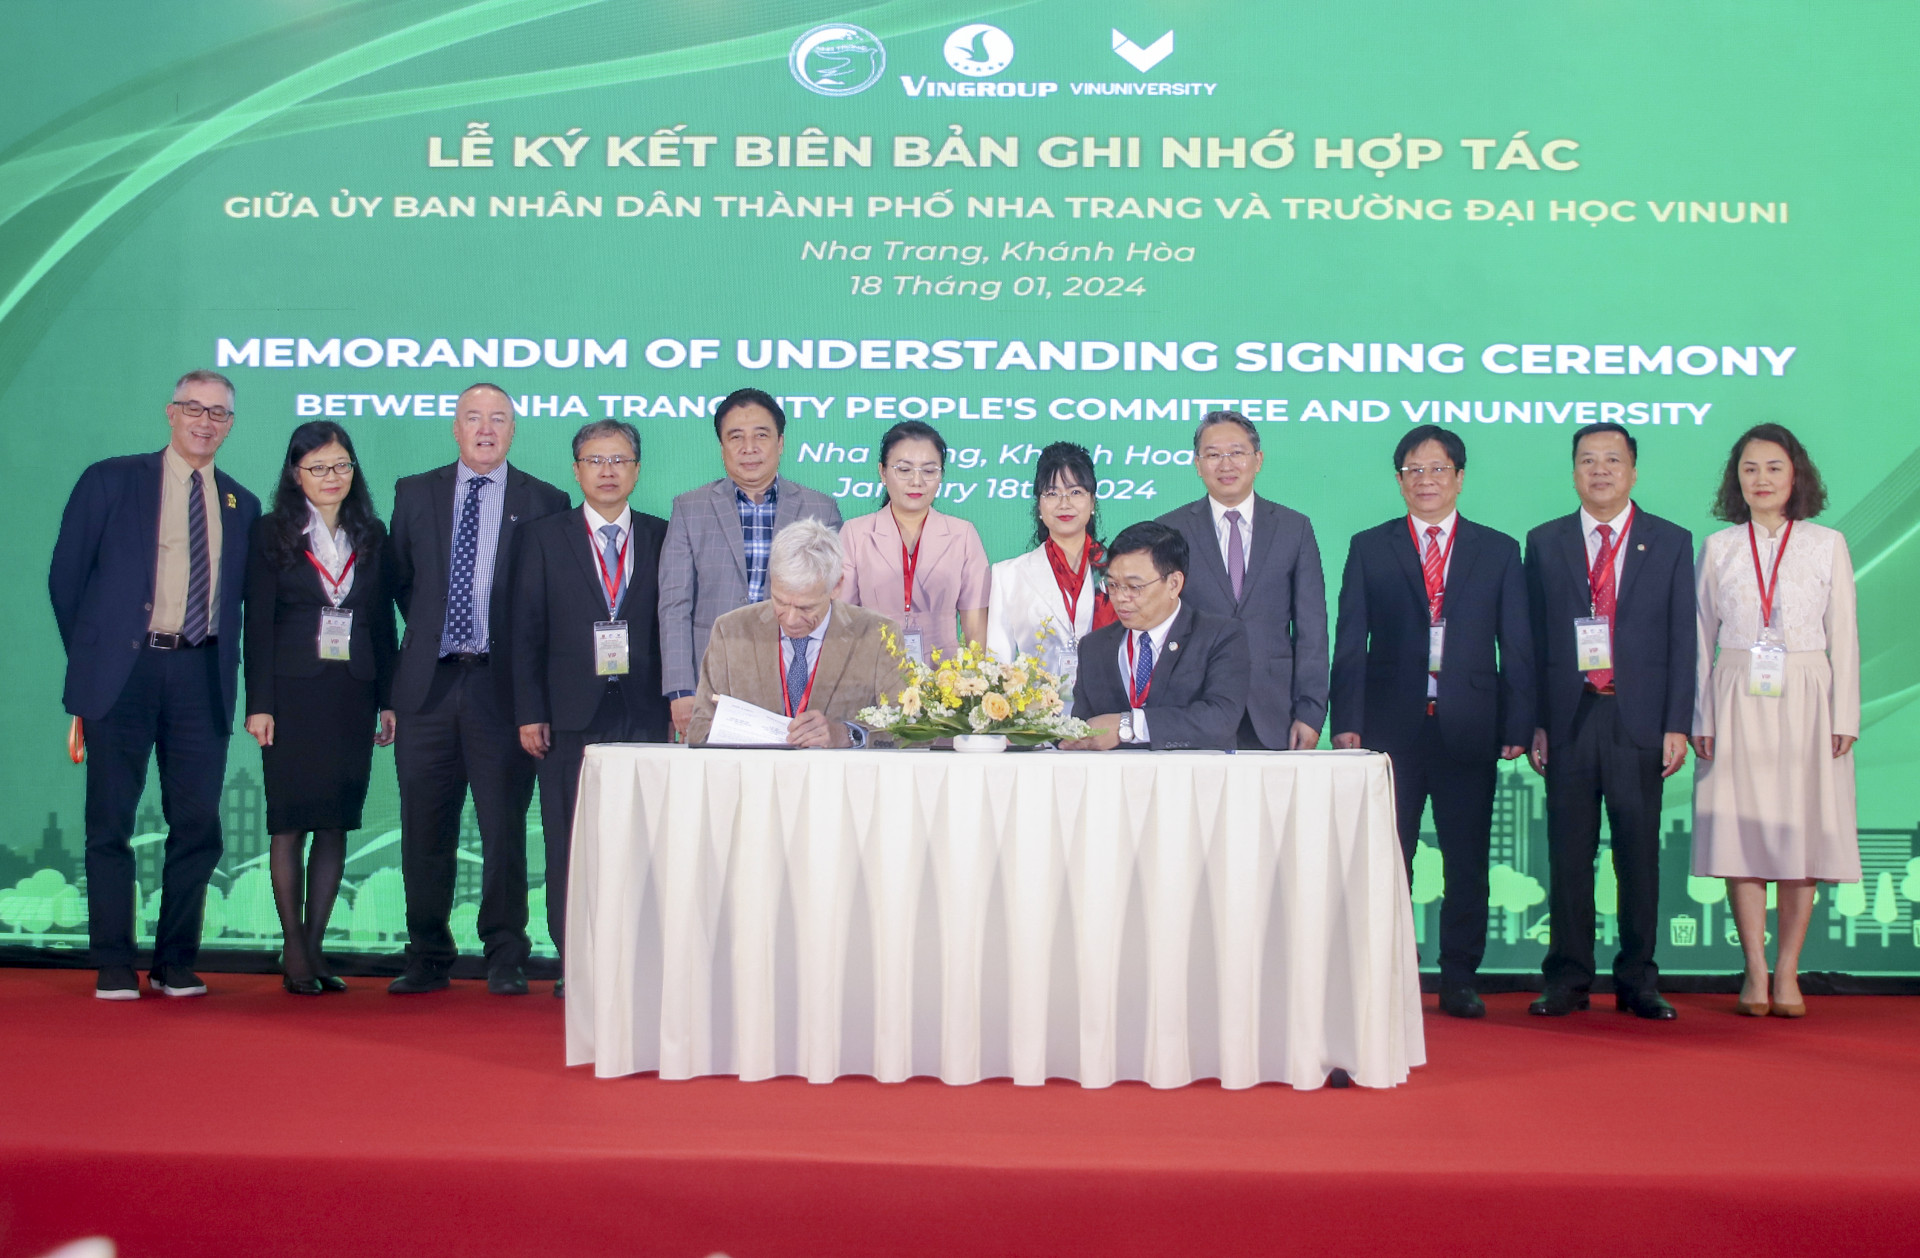 Lãnh đạo tỉnh chứng kiến UBND TP. Nha Trang và Trường Đại học VinUni ký kết biên bản ghi nhớ hợp tác về triển khai Đề án Chuyển đổi xanh, tăng trưởng xanh TP. Nha Trang.